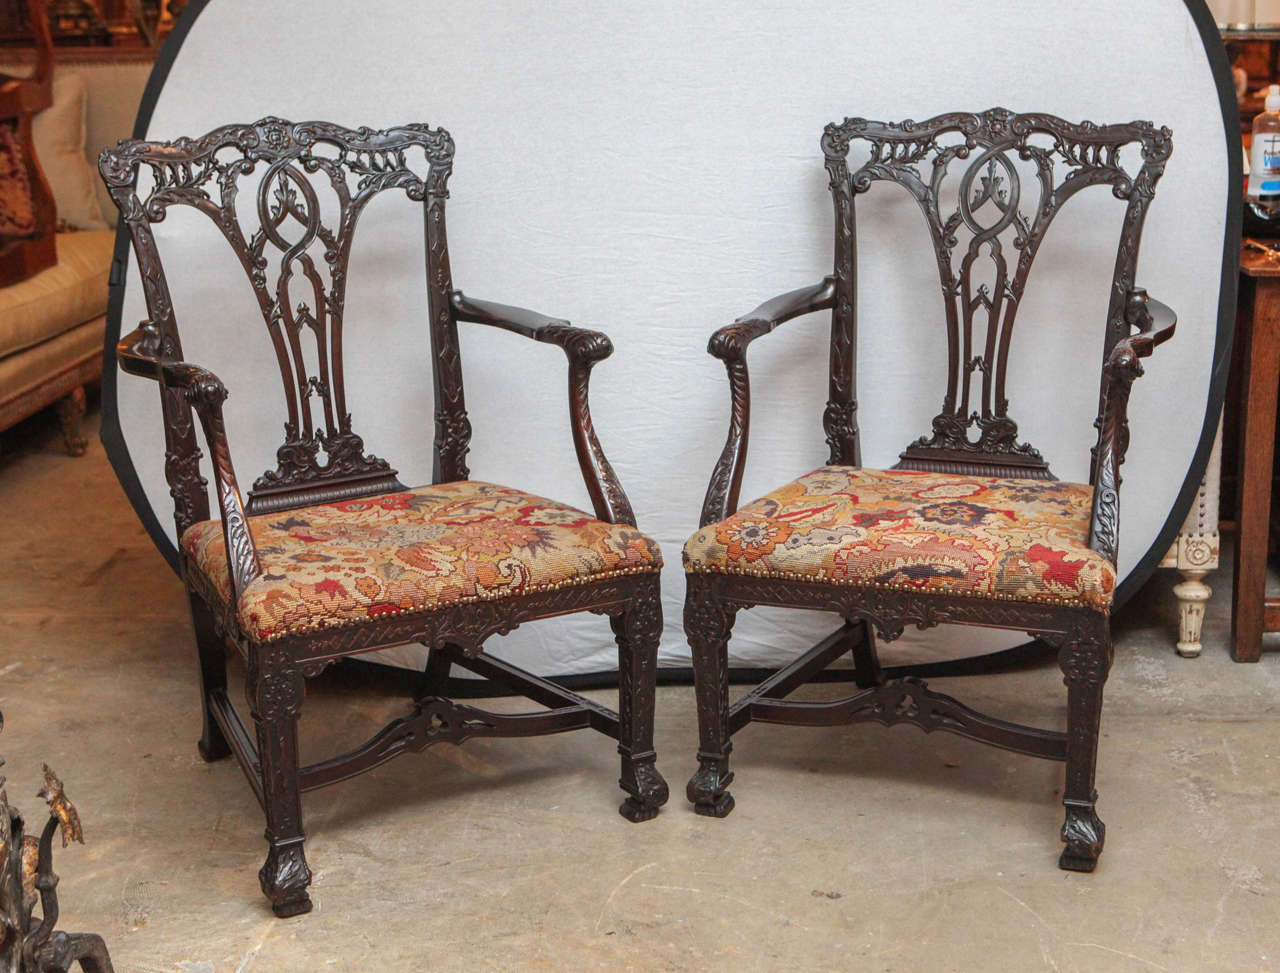 Paire de fauteuils ouverts surdimensionnés en acajou très finement sculpté, datant du 19e siècle, avec sièges d'origine brodés.